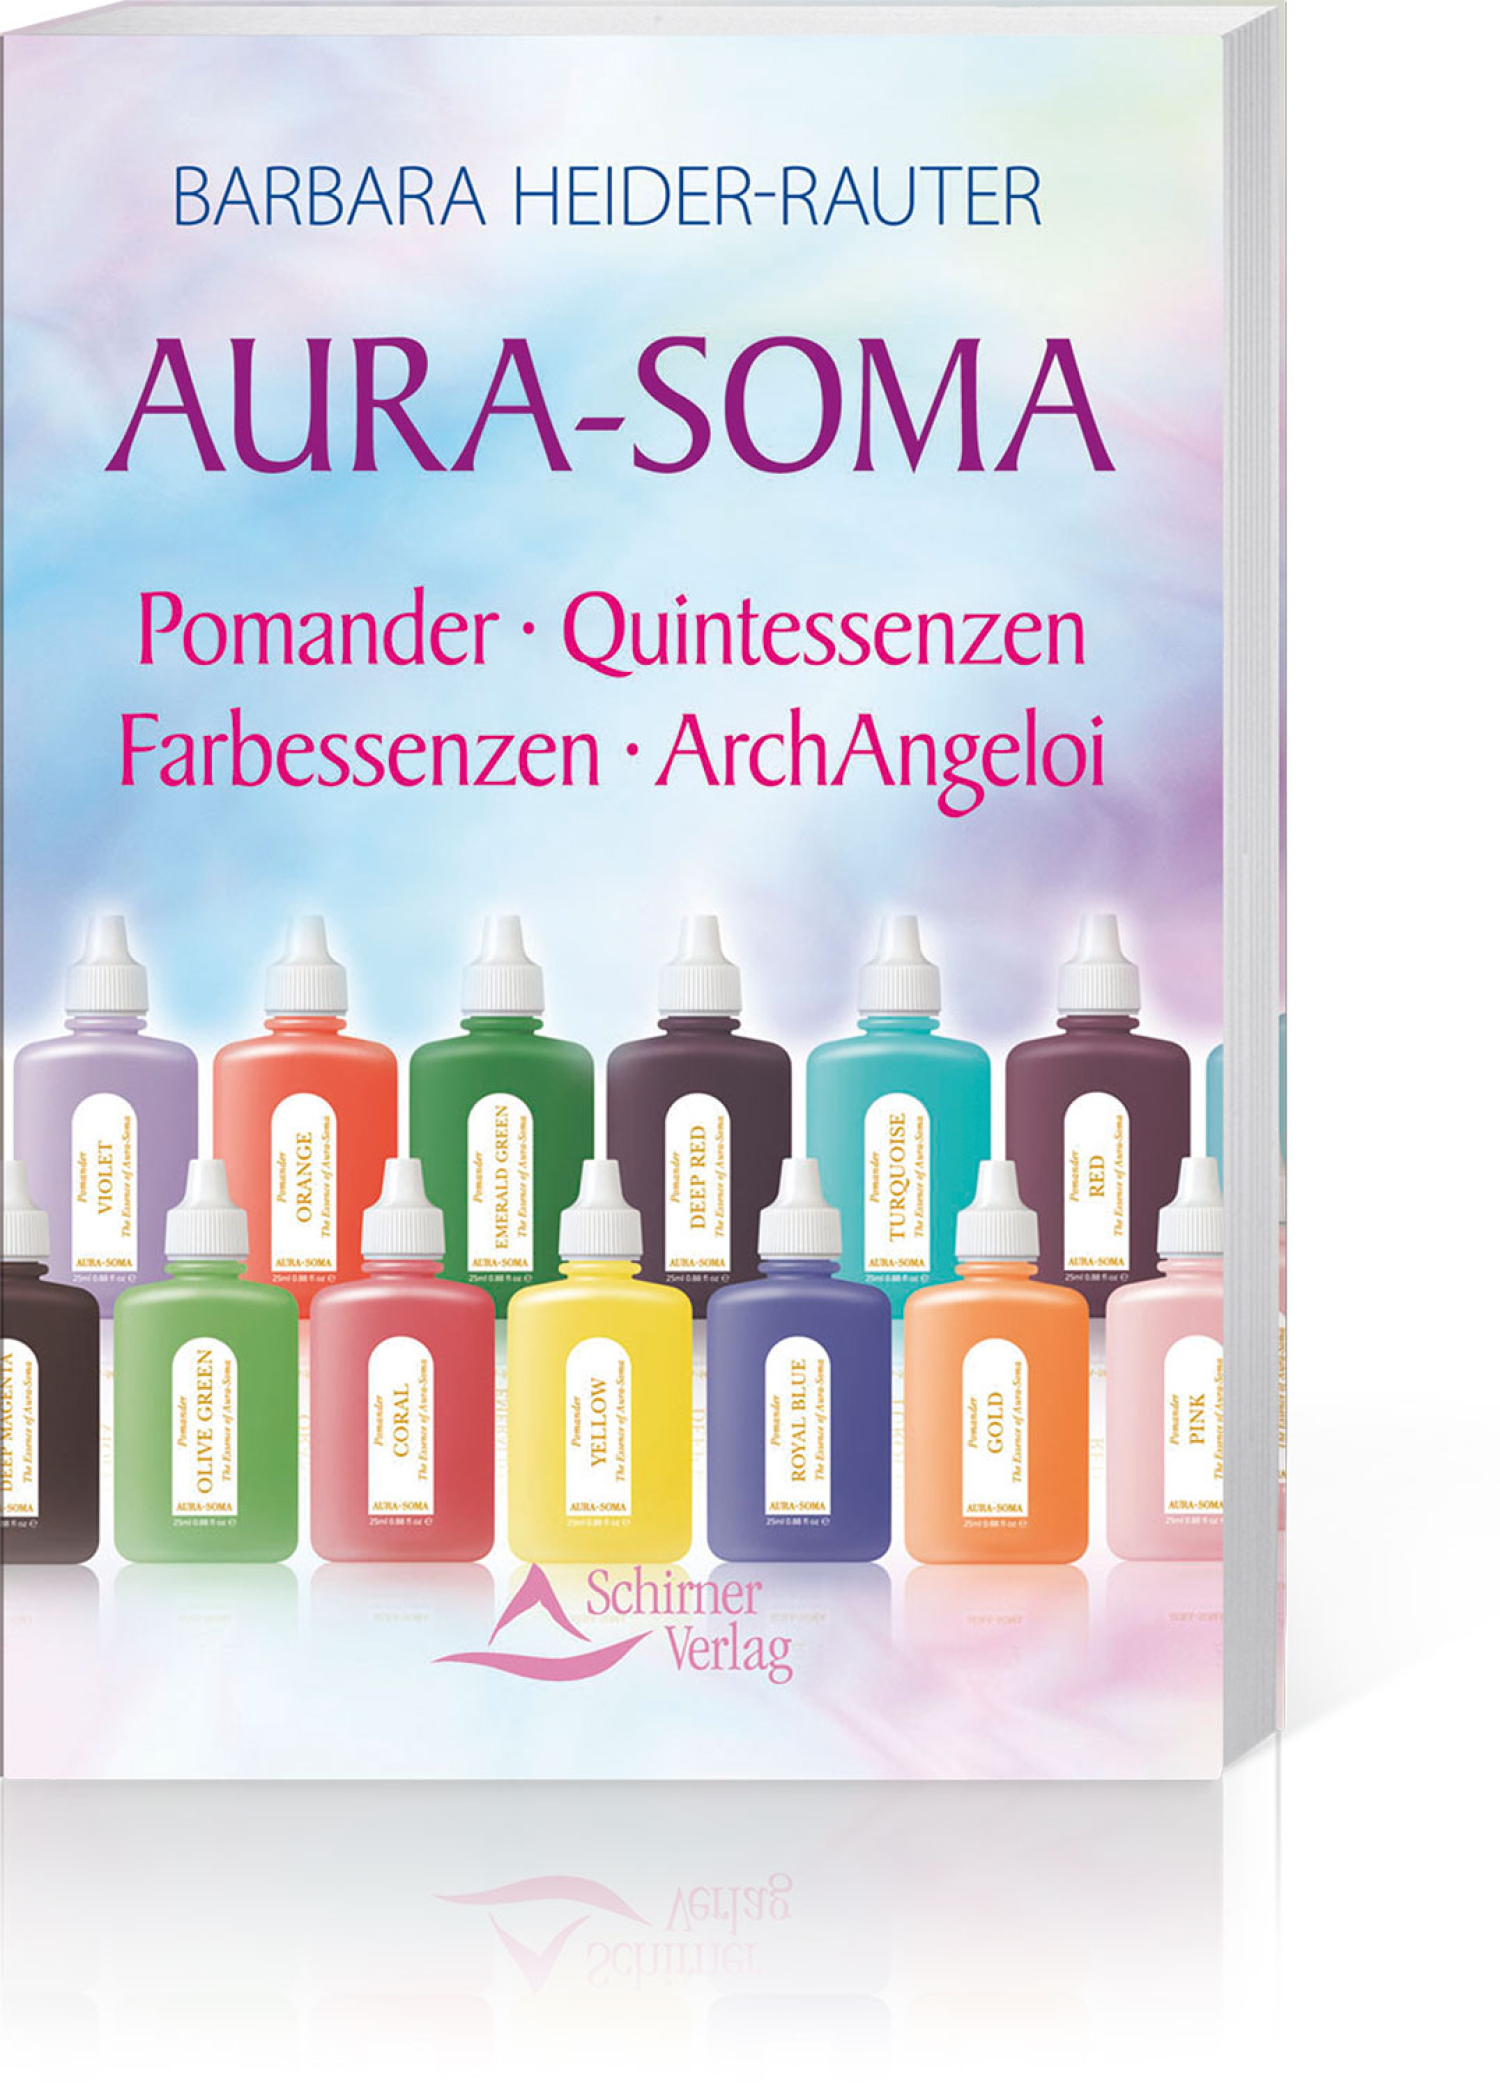 Aura-Soma - Pomander - Quintessenzen - Farbessenzen - ArchAngeloi, Produktbild 1